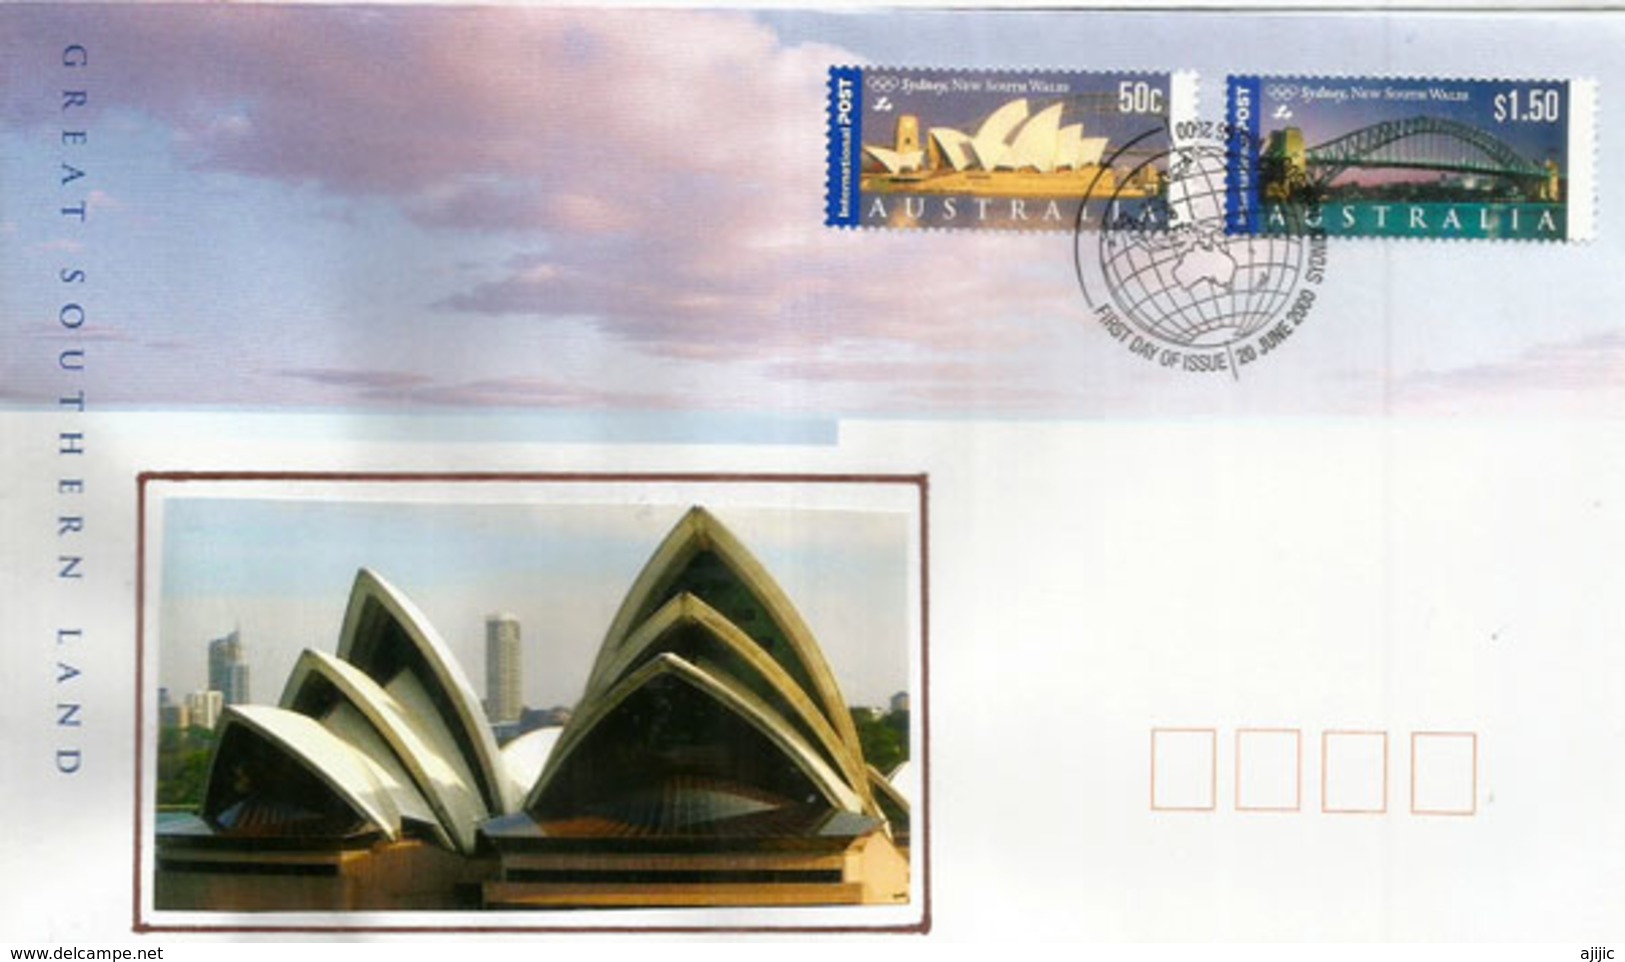 Patrimoine Architectural  De L'Australie (Opera House Sydney, Harbour Bridge Sydney)  FDC International Post - Premiers Jours (FDC)